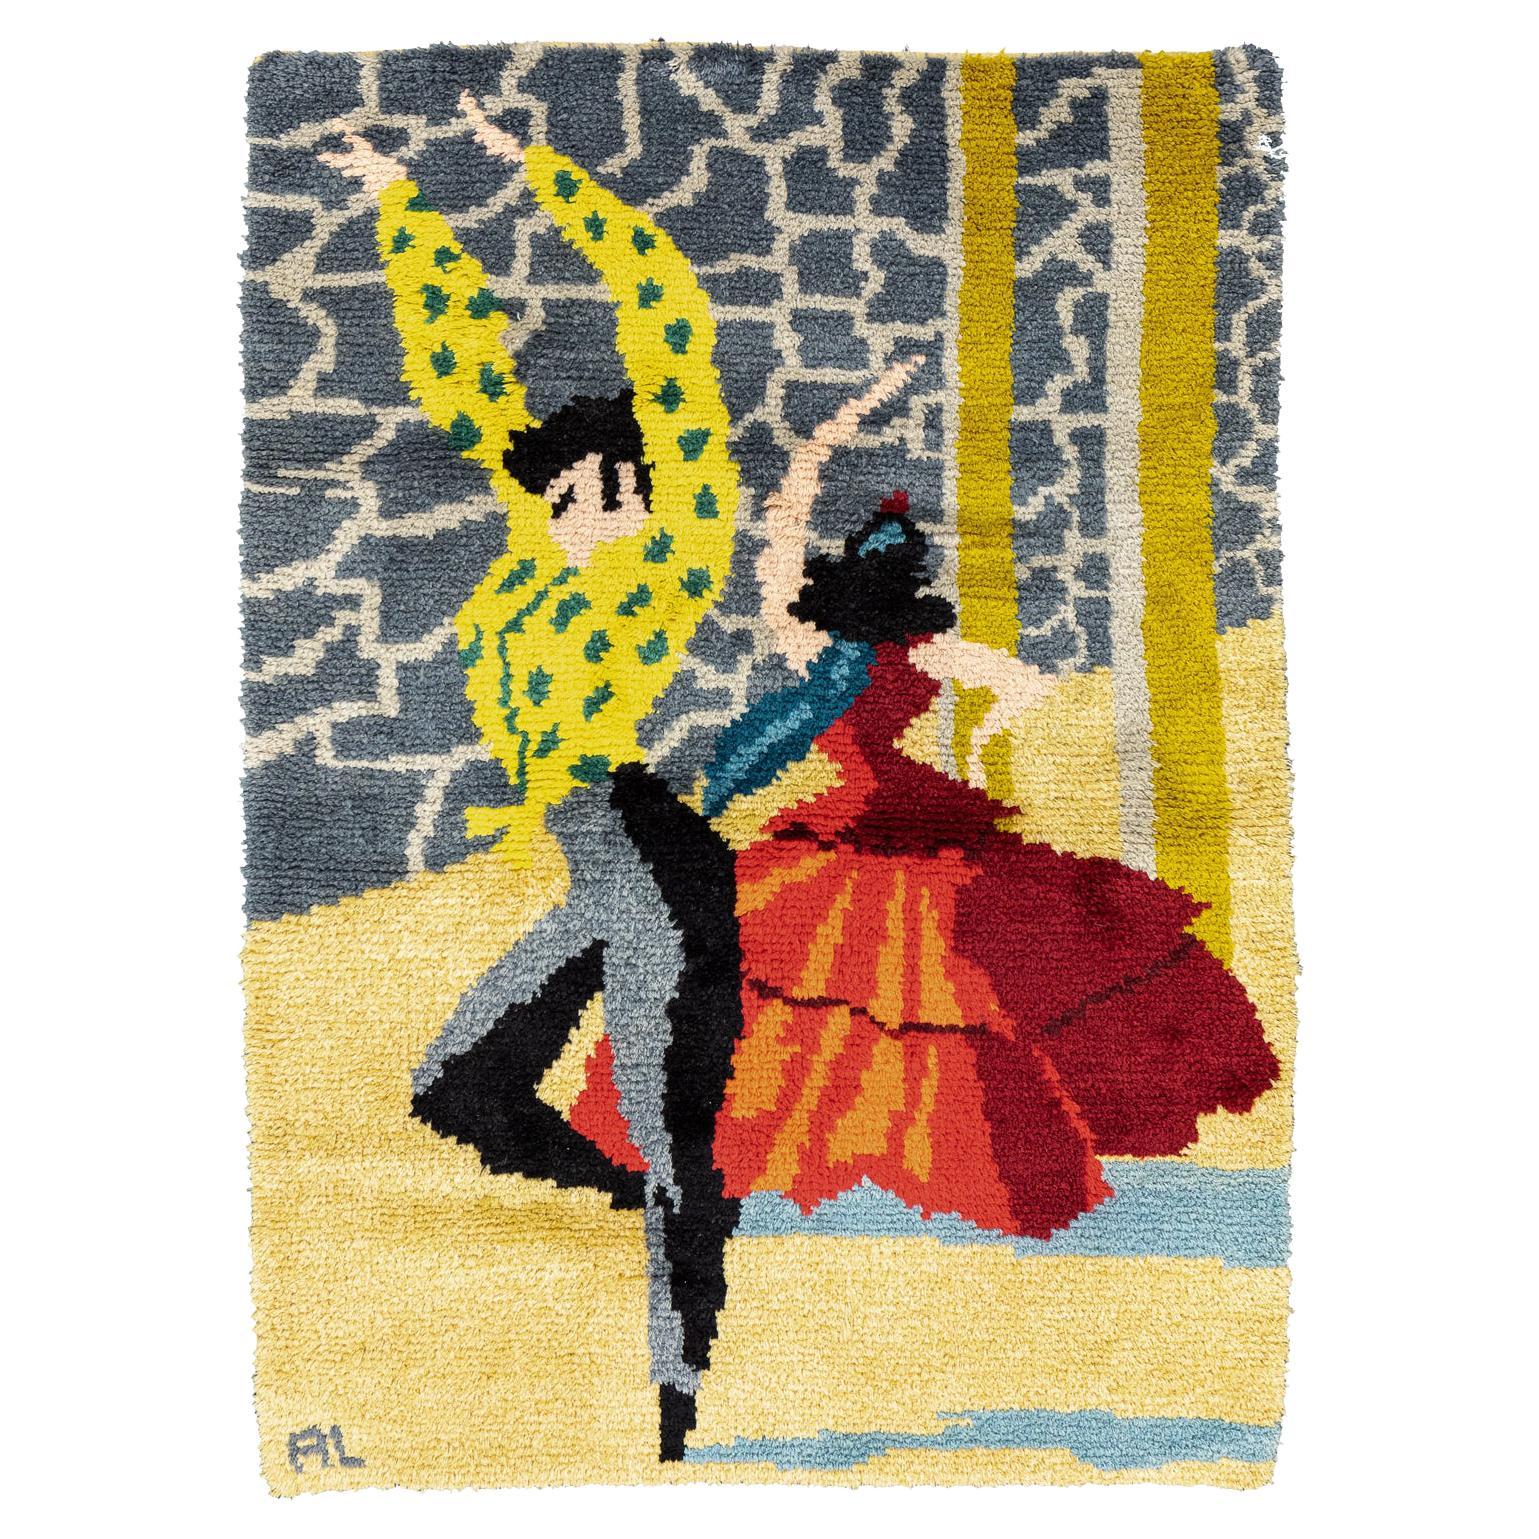 Spanischer signierter Flamenco-Teppich im Vintage-Stil, 1950–1970